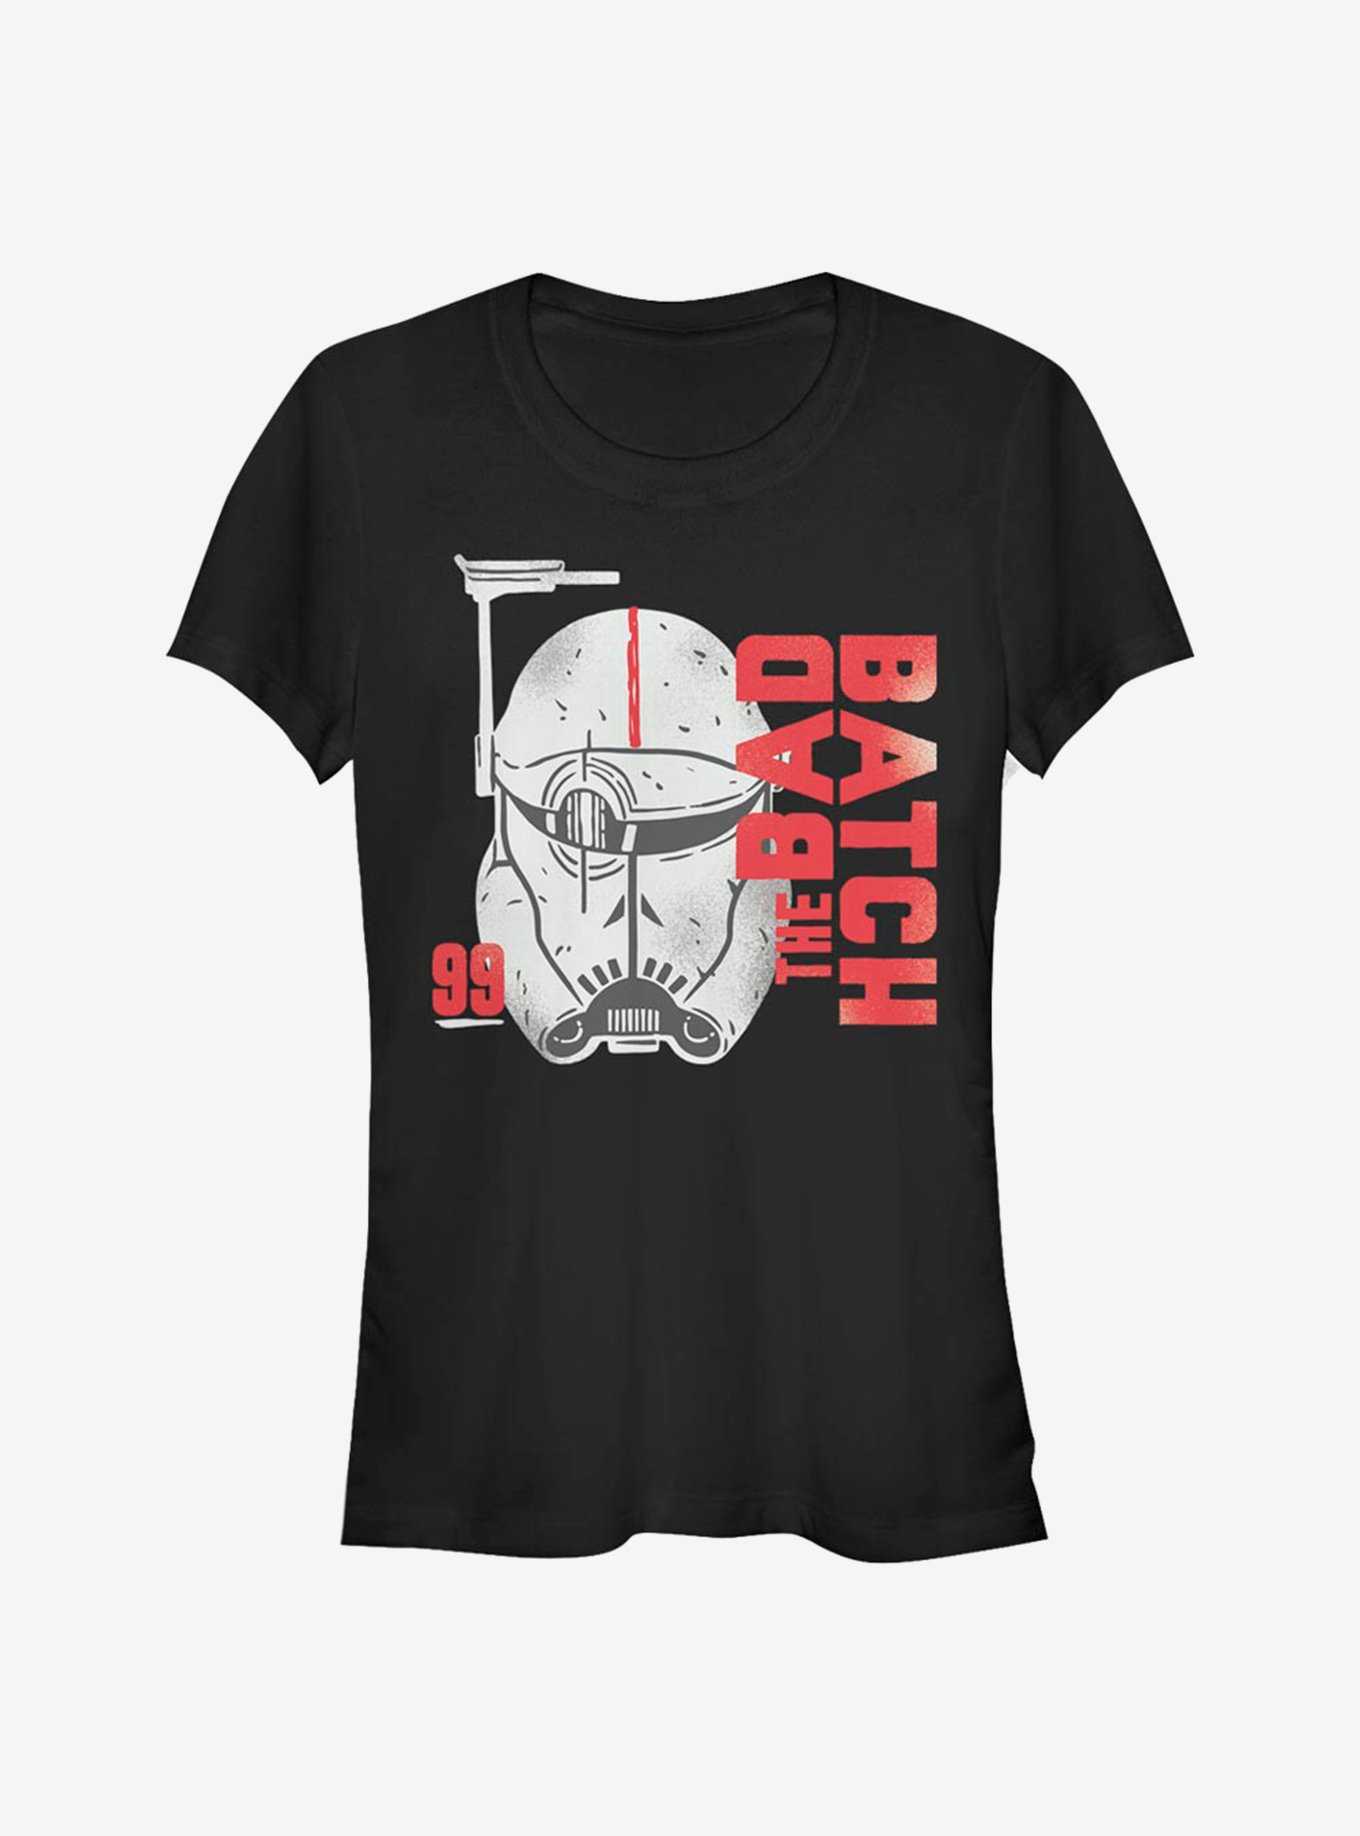 Star Wars: The Bad Batch Unit 99 T-Shirt, , hi-res